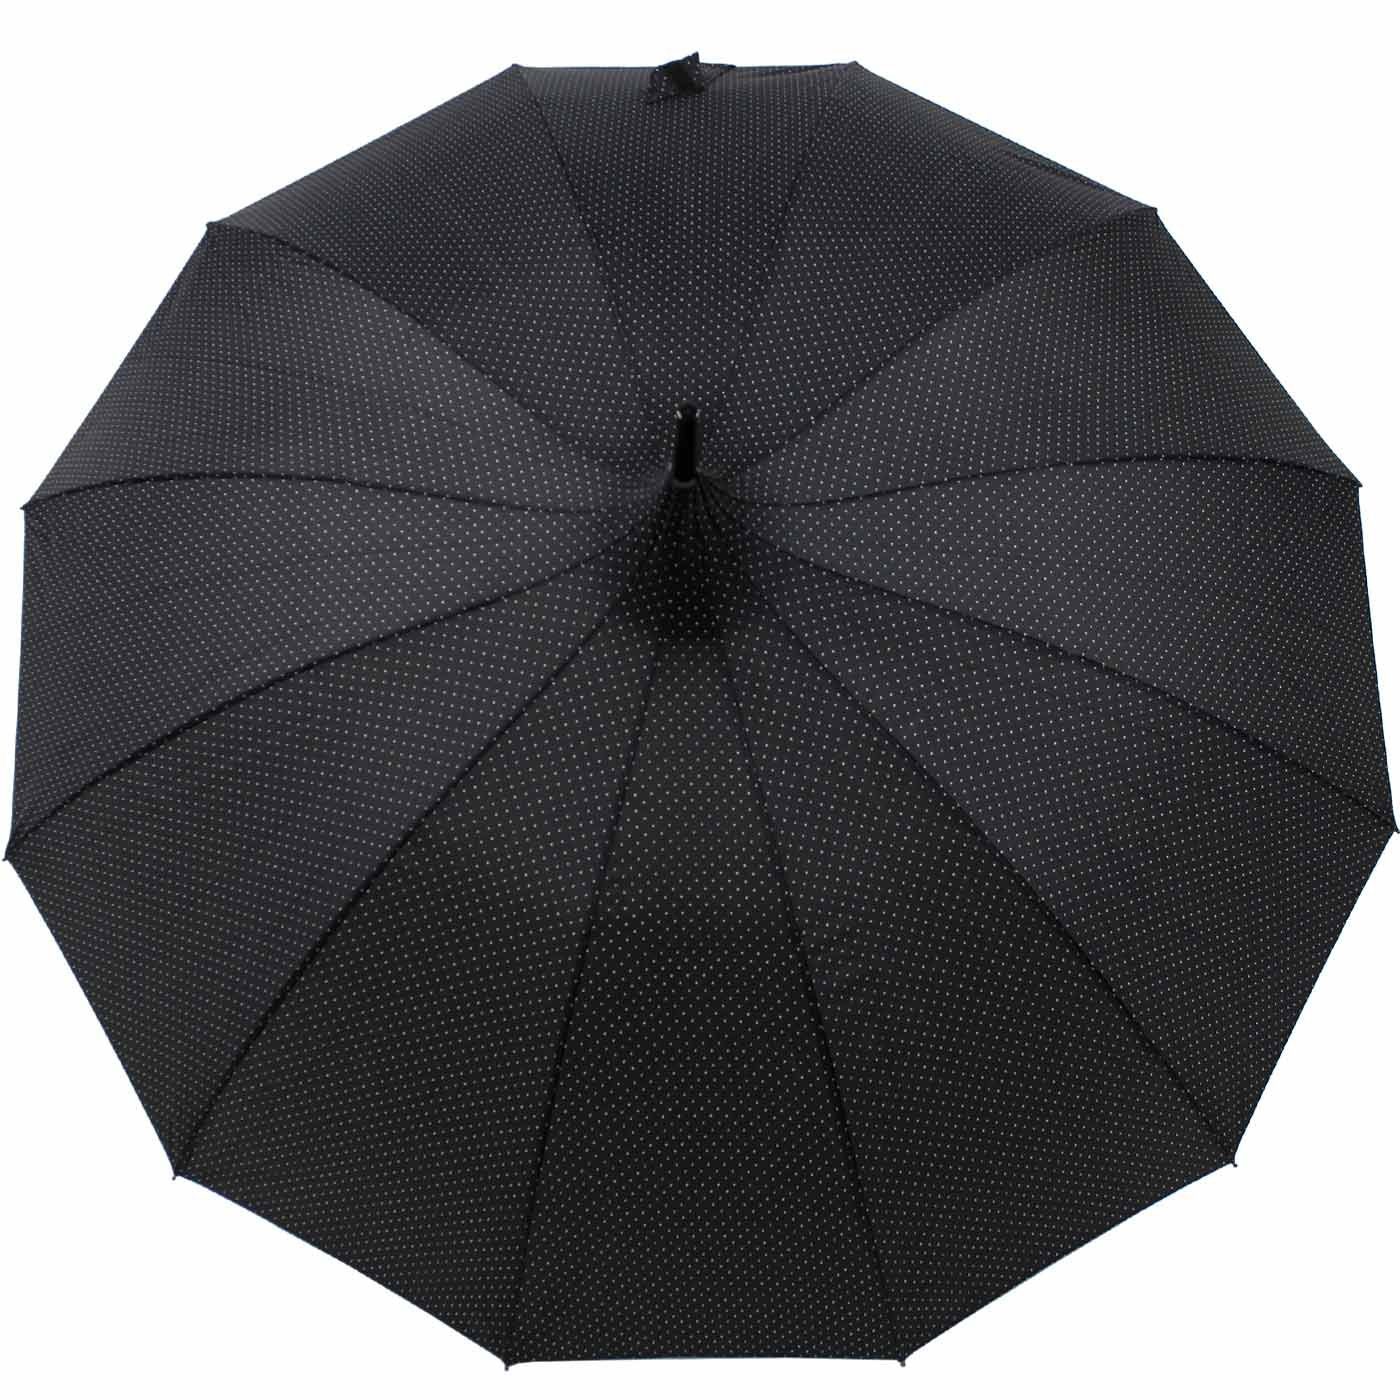 Langregenschirm Auf-Automatik, mit Damenschirm schwarz elegante doppler® mit Punkten Pagodenform geformter auffällig dezenten